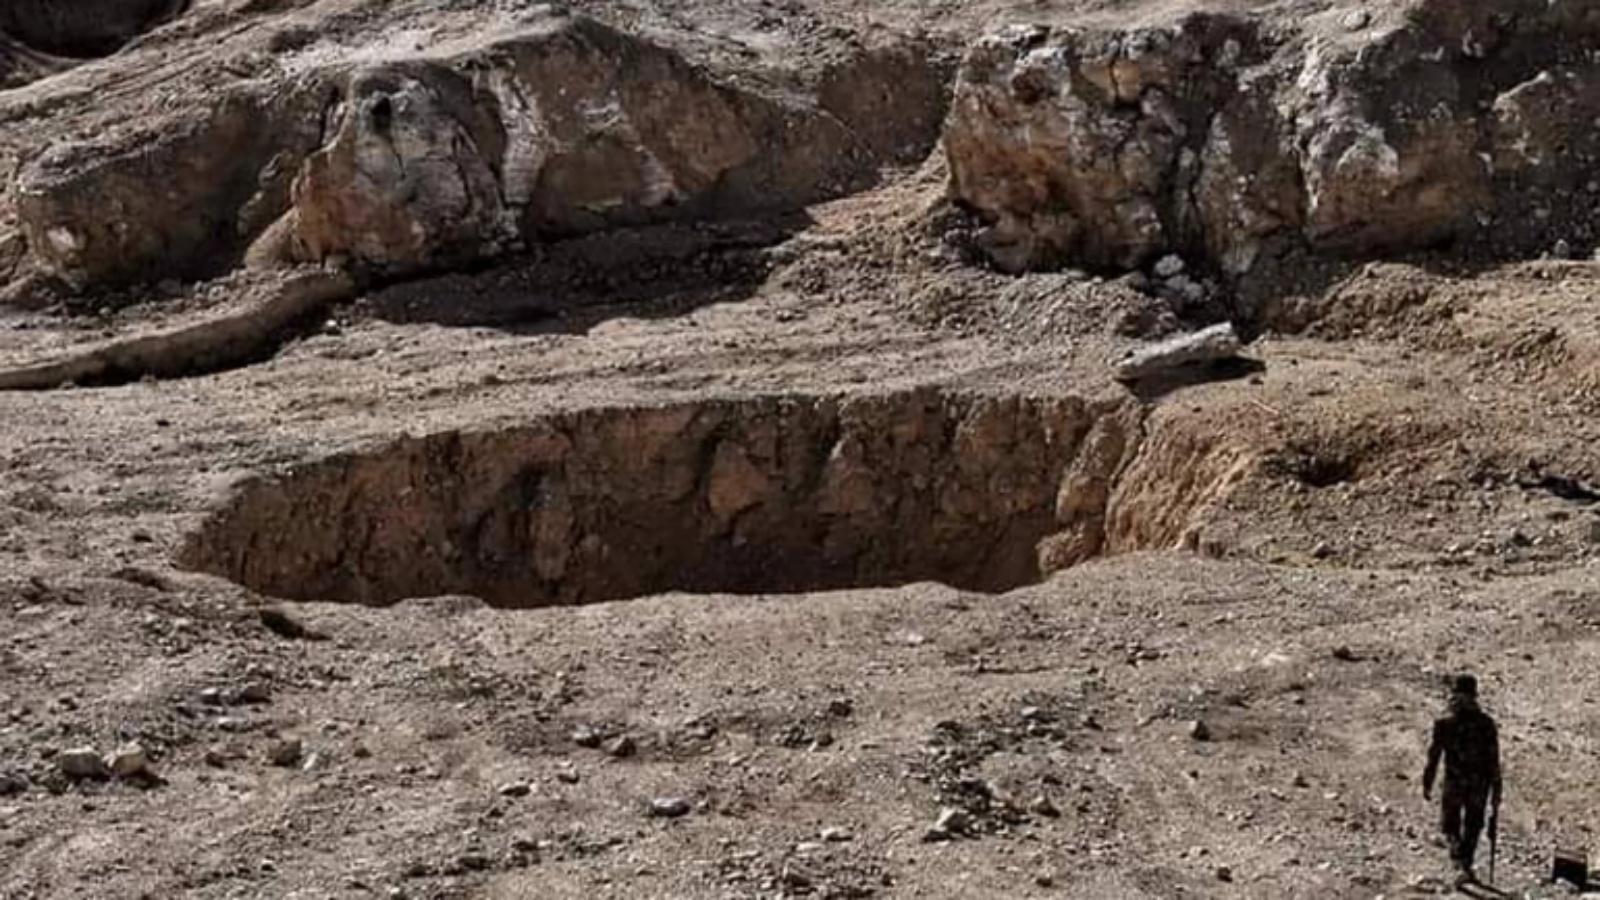 حفرة الخسفة بمحافظة نينوى العراقية التي تحولت لأكبر مقبرة جماعية في العالم تستعد السلطات العراقية لافتتاحها (تويتر)